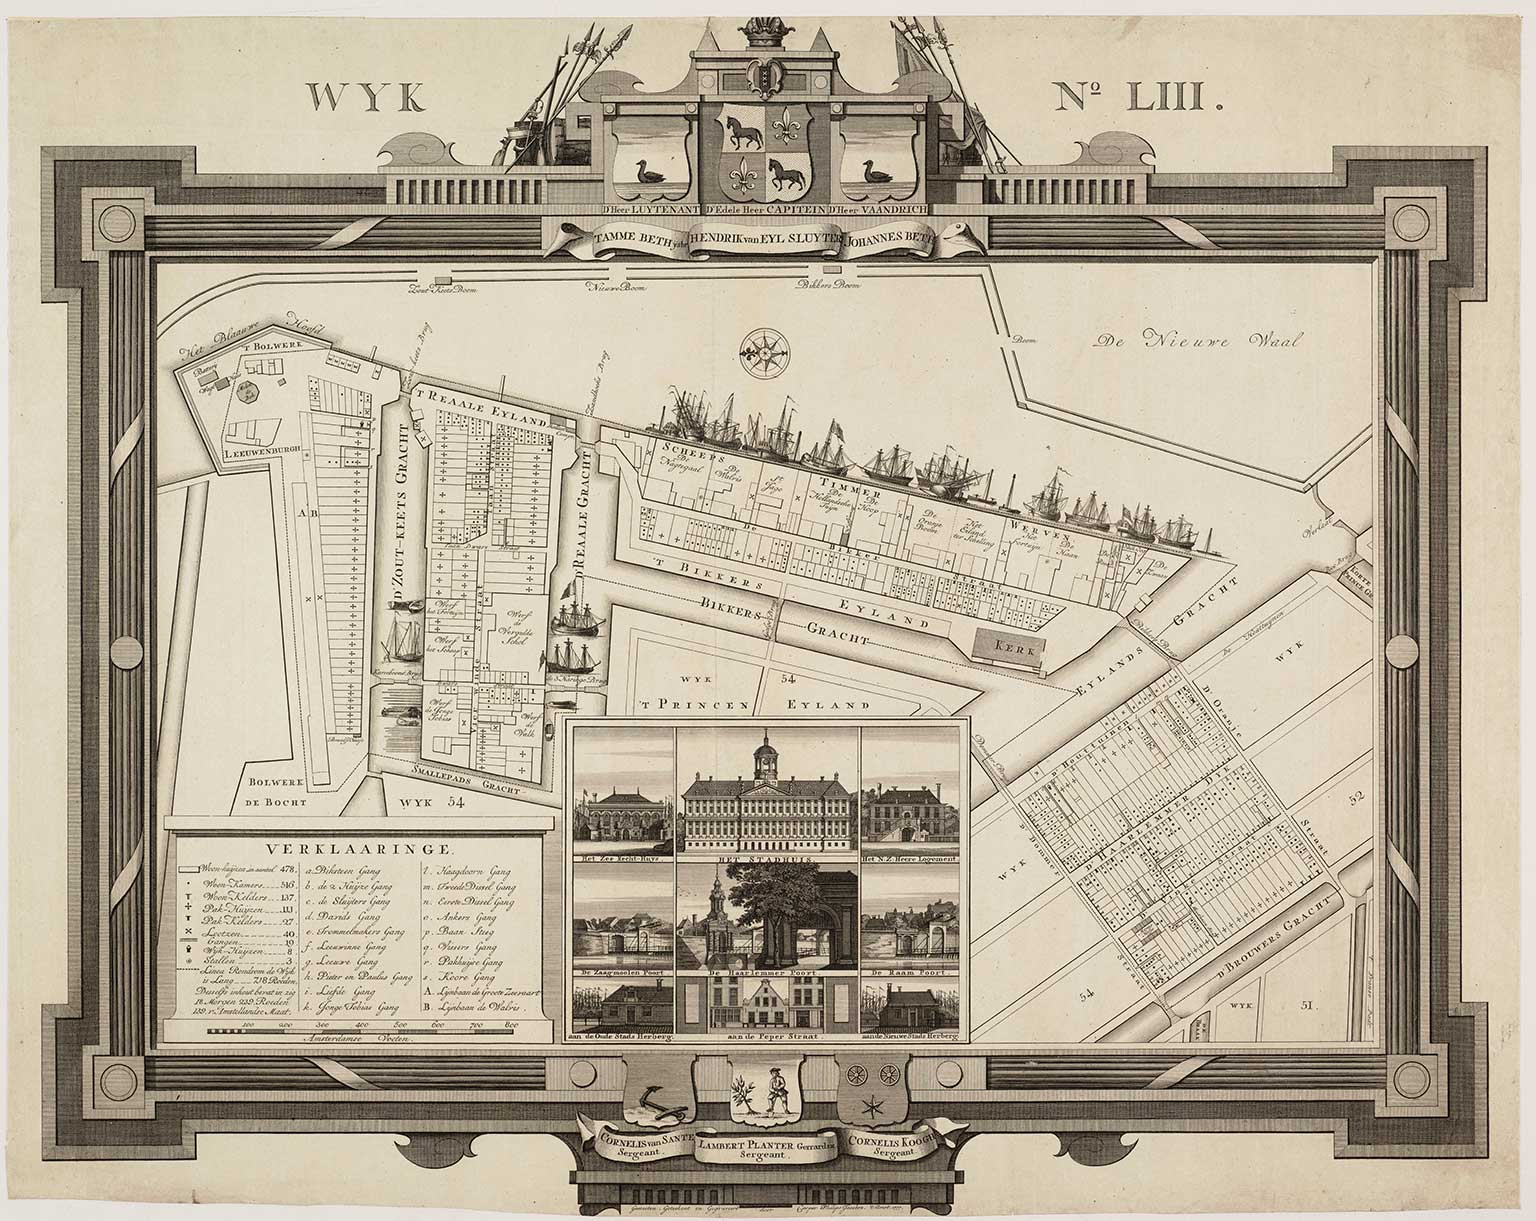 Kaart uit 1777 met daarop de scheepswerven van Bicker op Bickerseiland, Amsterdam